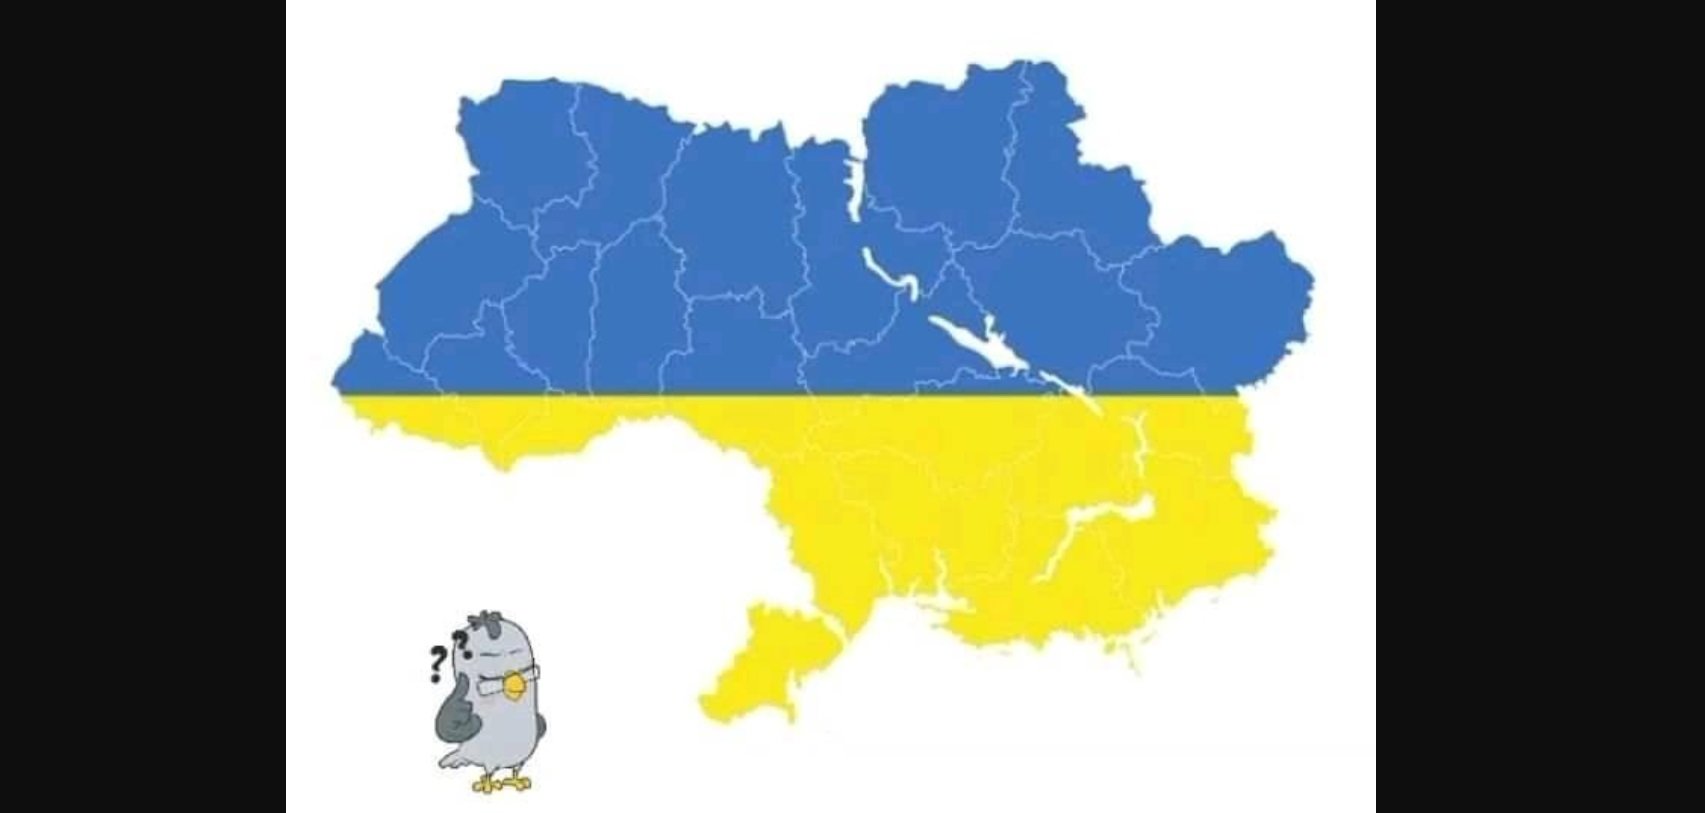 Нова зрада: JBL Ukraine опубликовали карту Украины без Крыма, Донецкой и Луганской областей. ФОТО